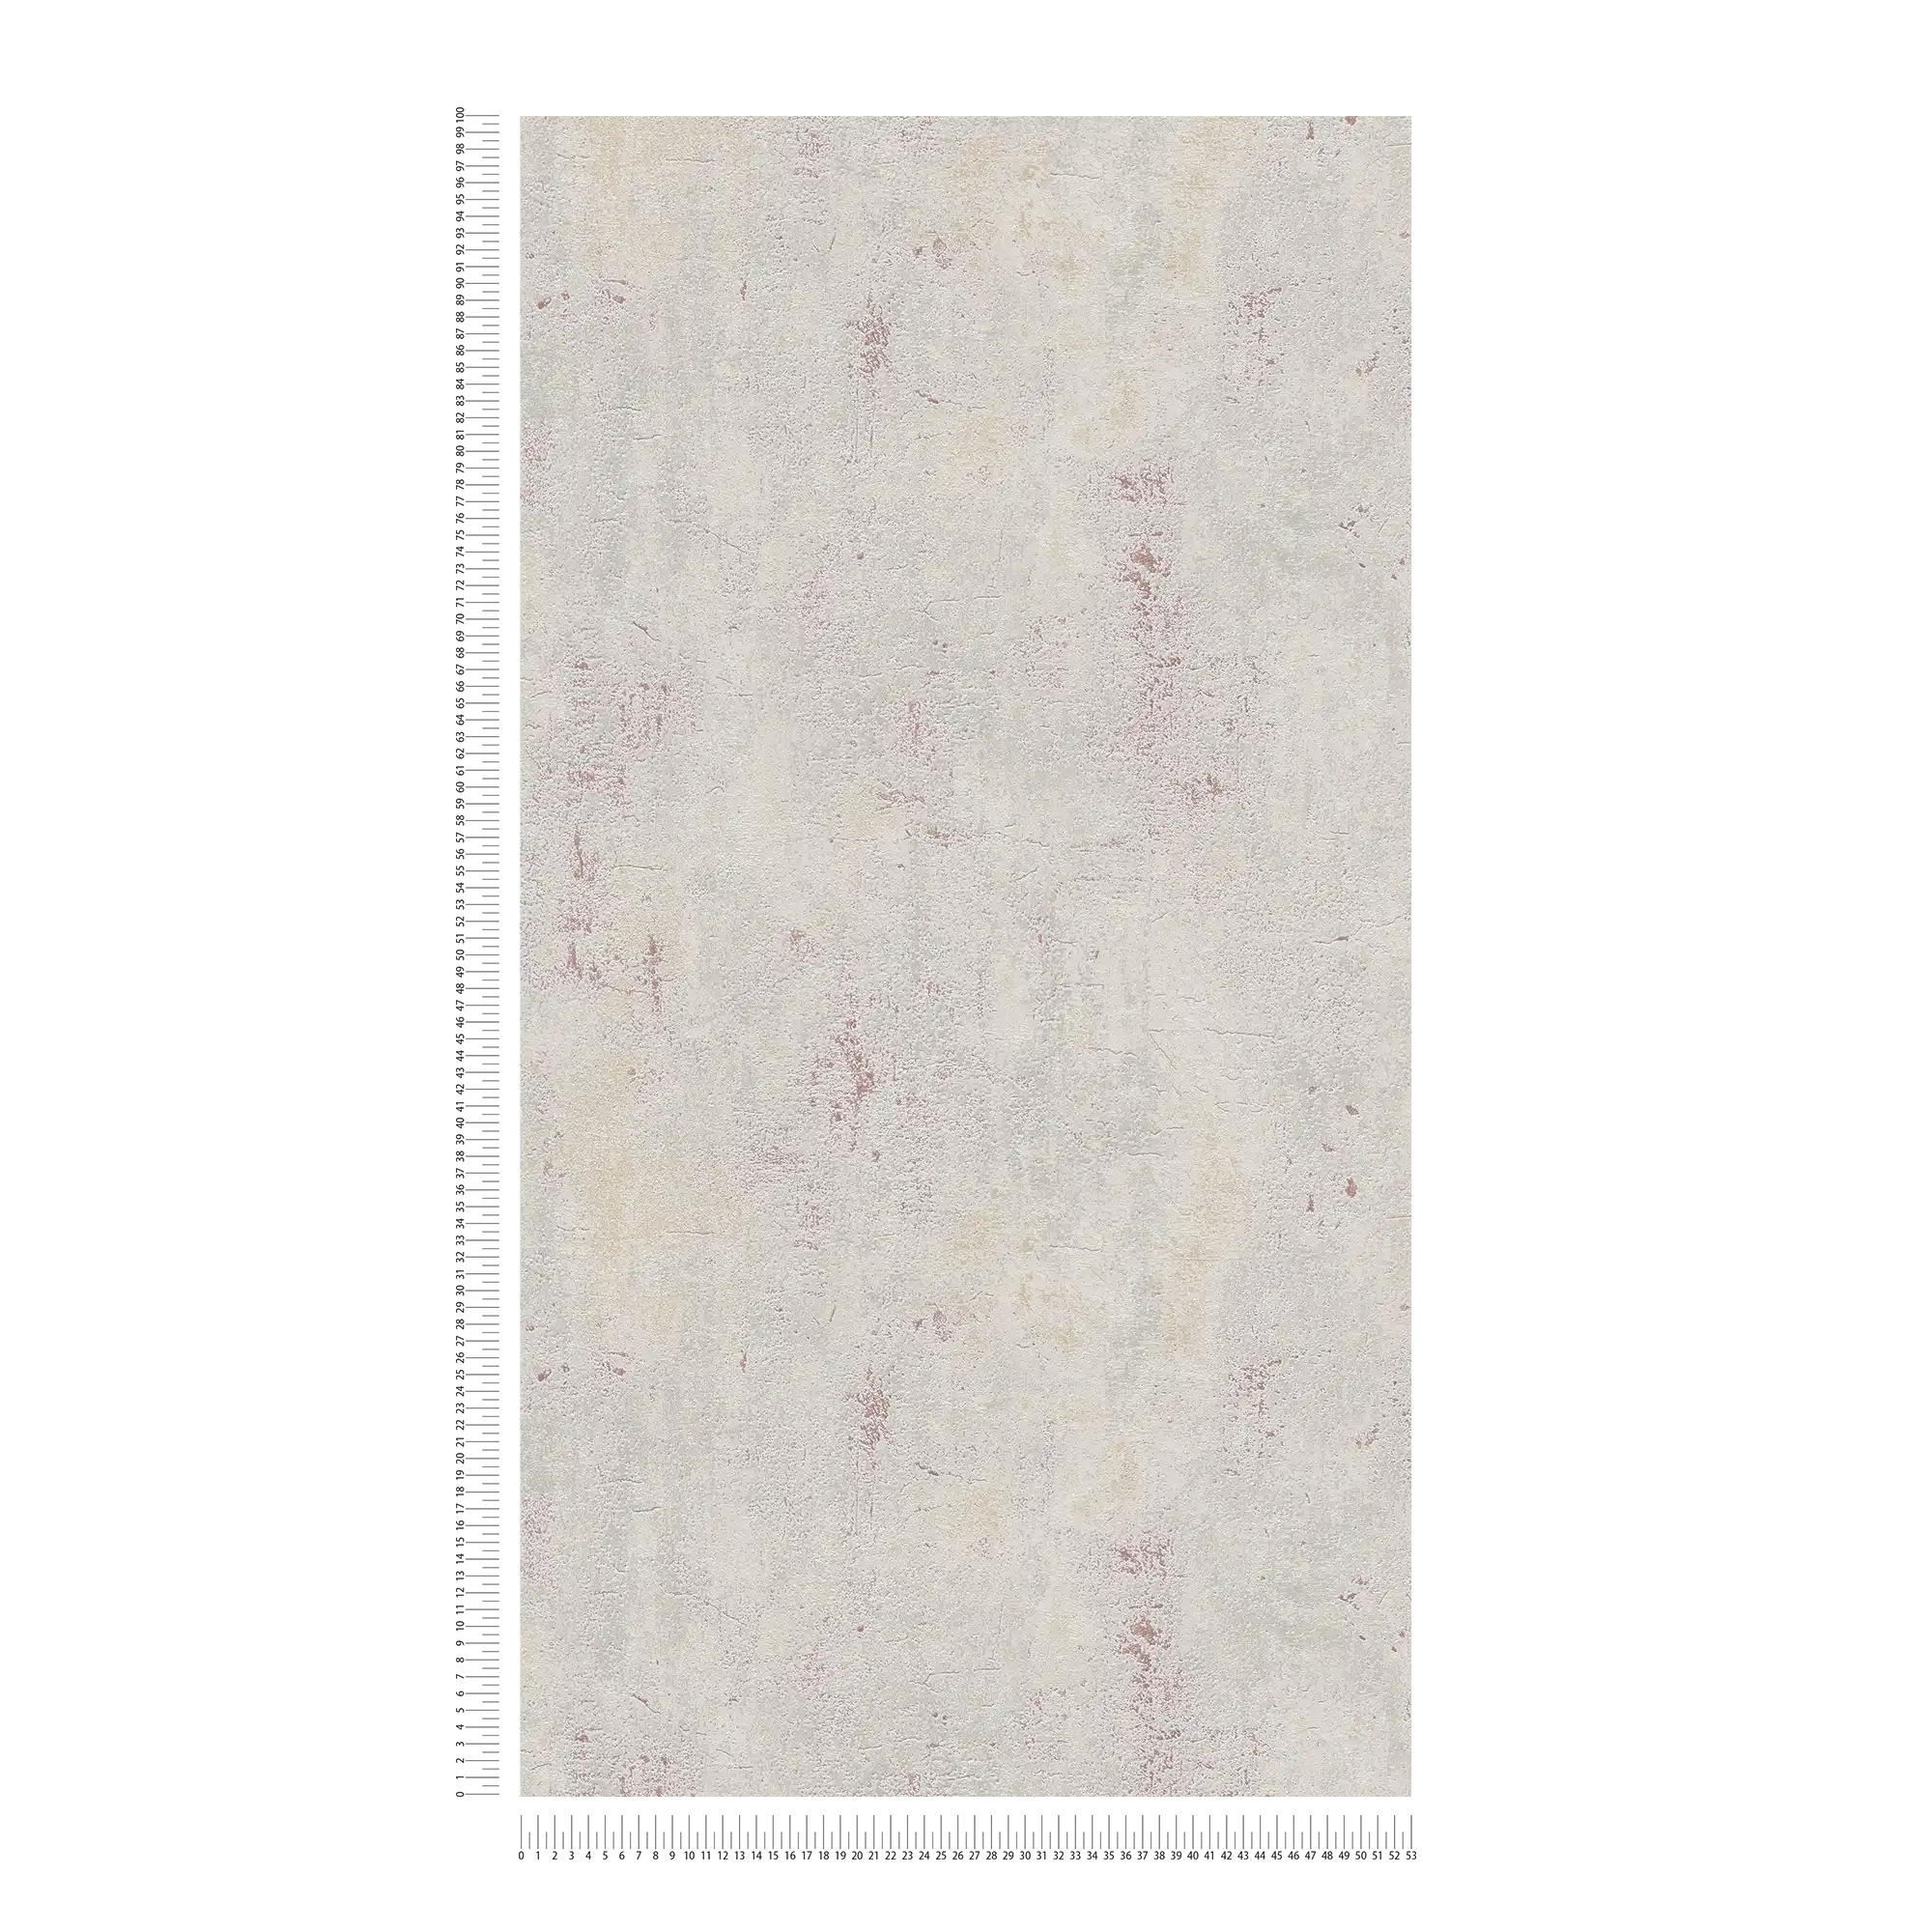             Carta da parati in cemento con design industriale rustico - beige, grigio, rosso
        